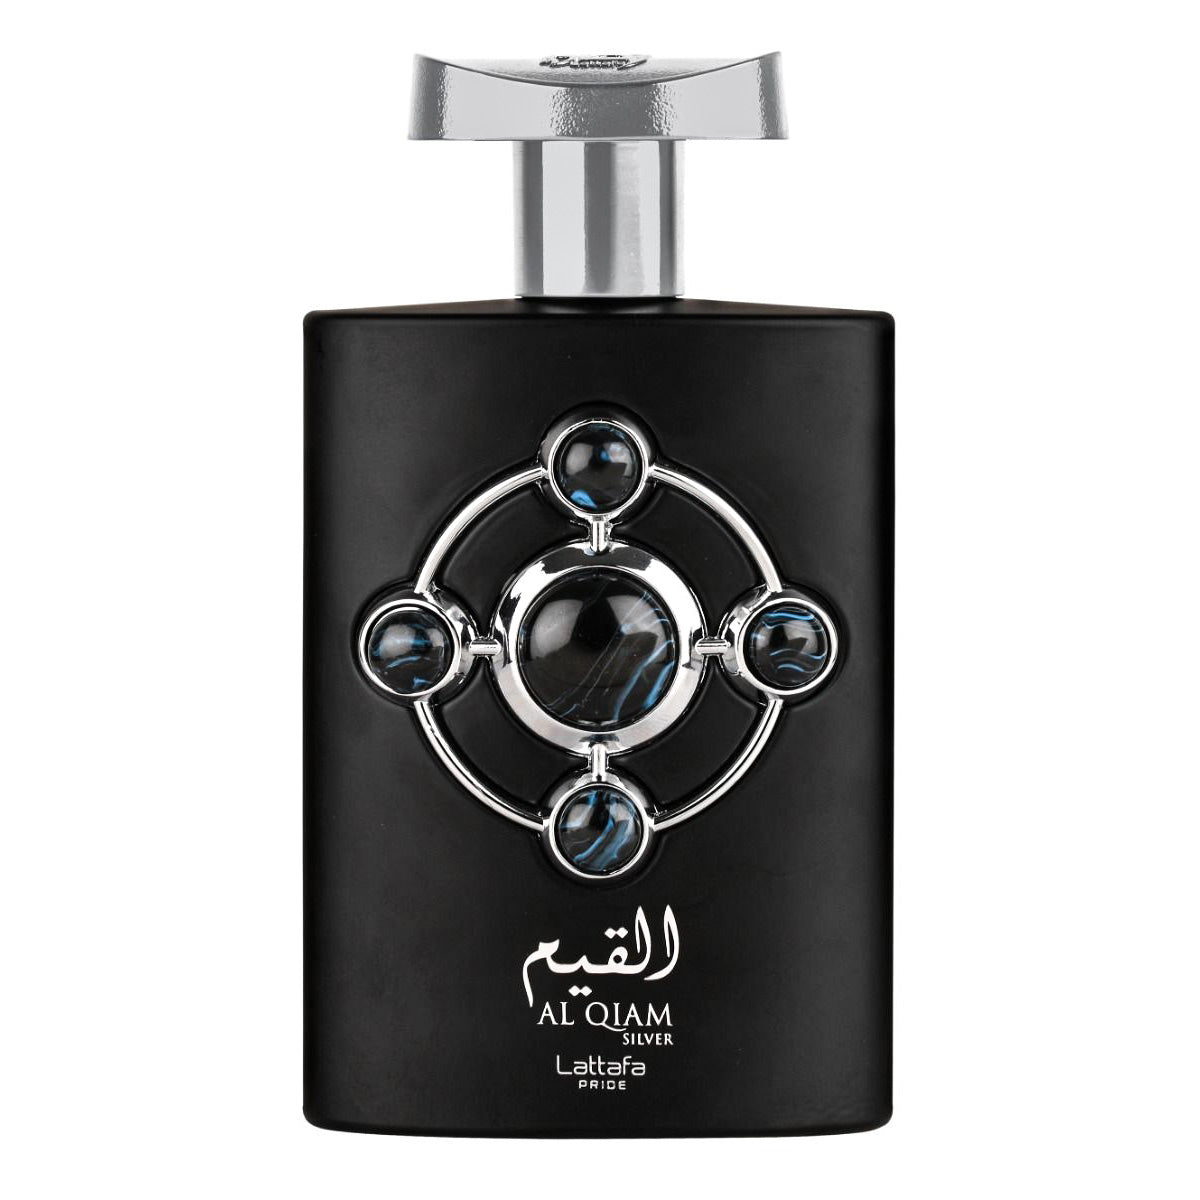 Al Qiam Silver Eau De Parfum 100ml Lattafa Pride-Perfume Heaven